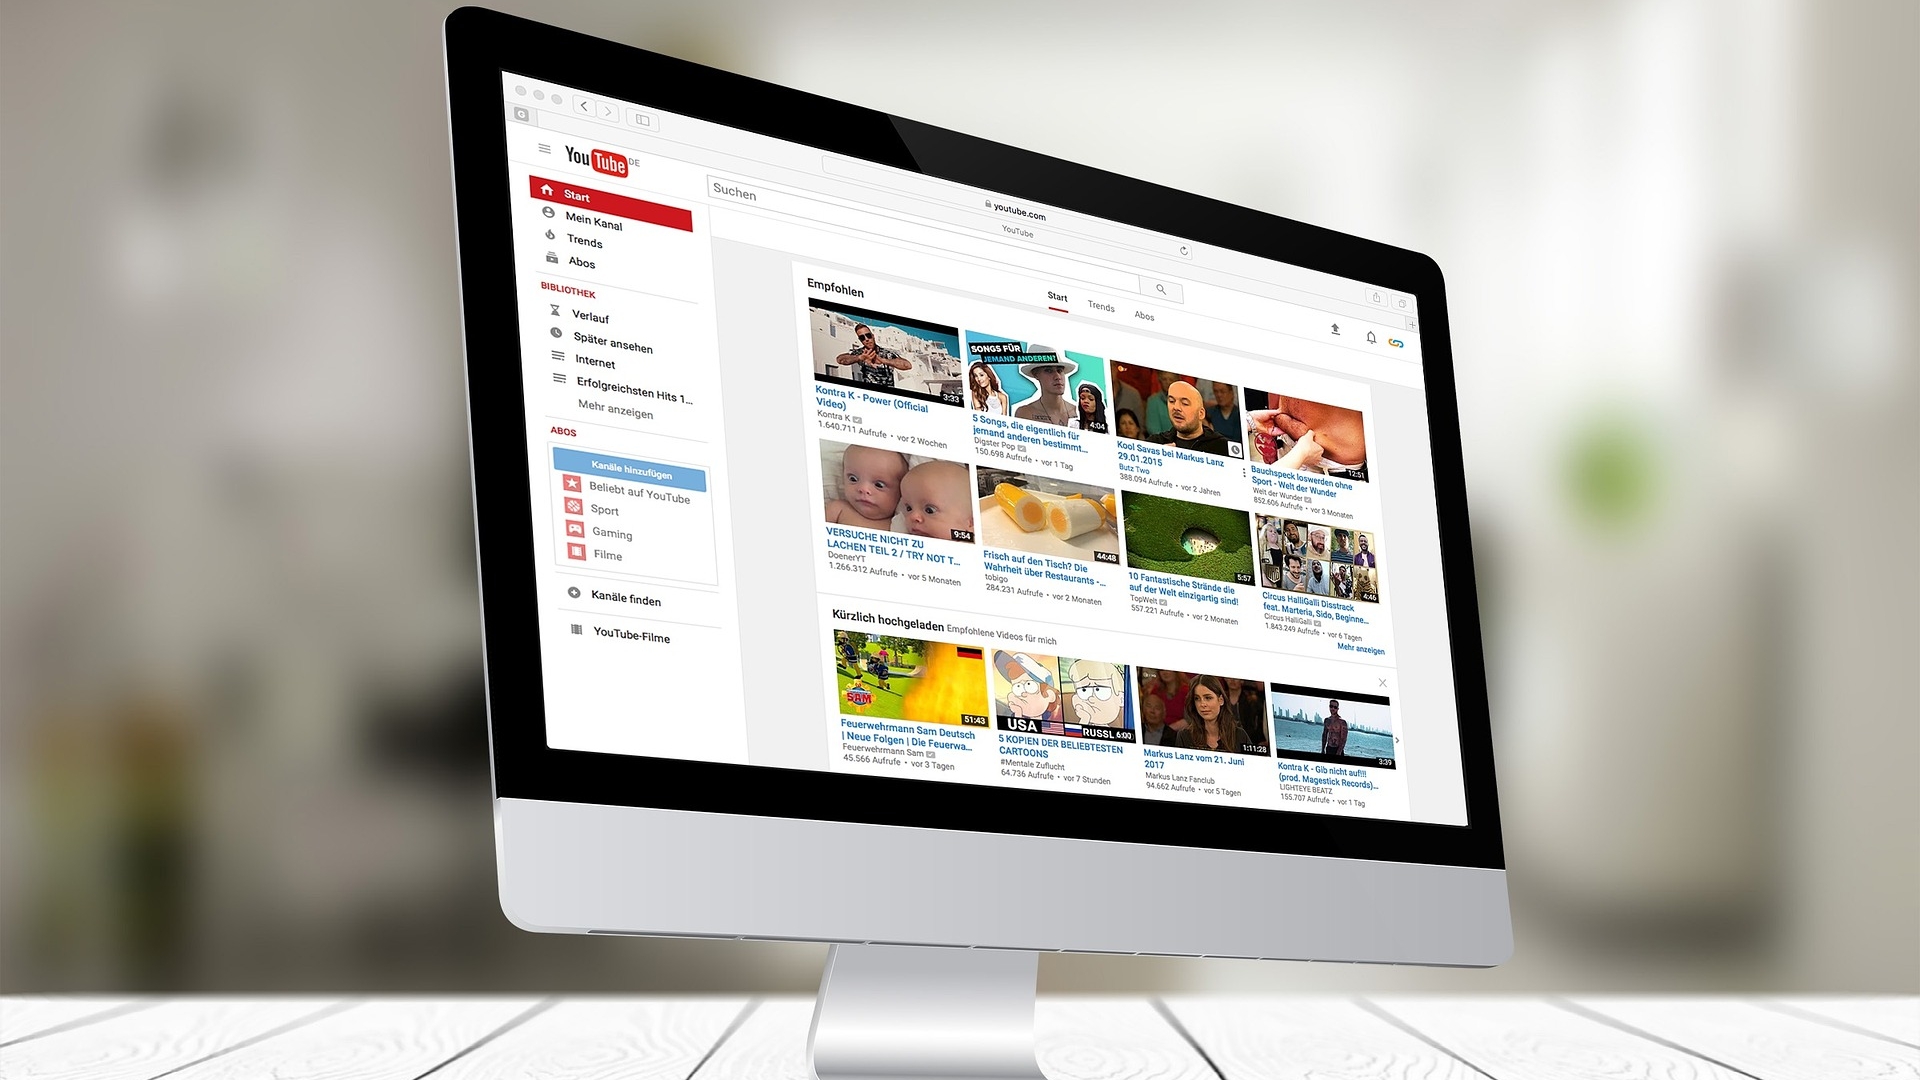 Видеохостинг YouTube расширил привилегии для Premium-пользователей